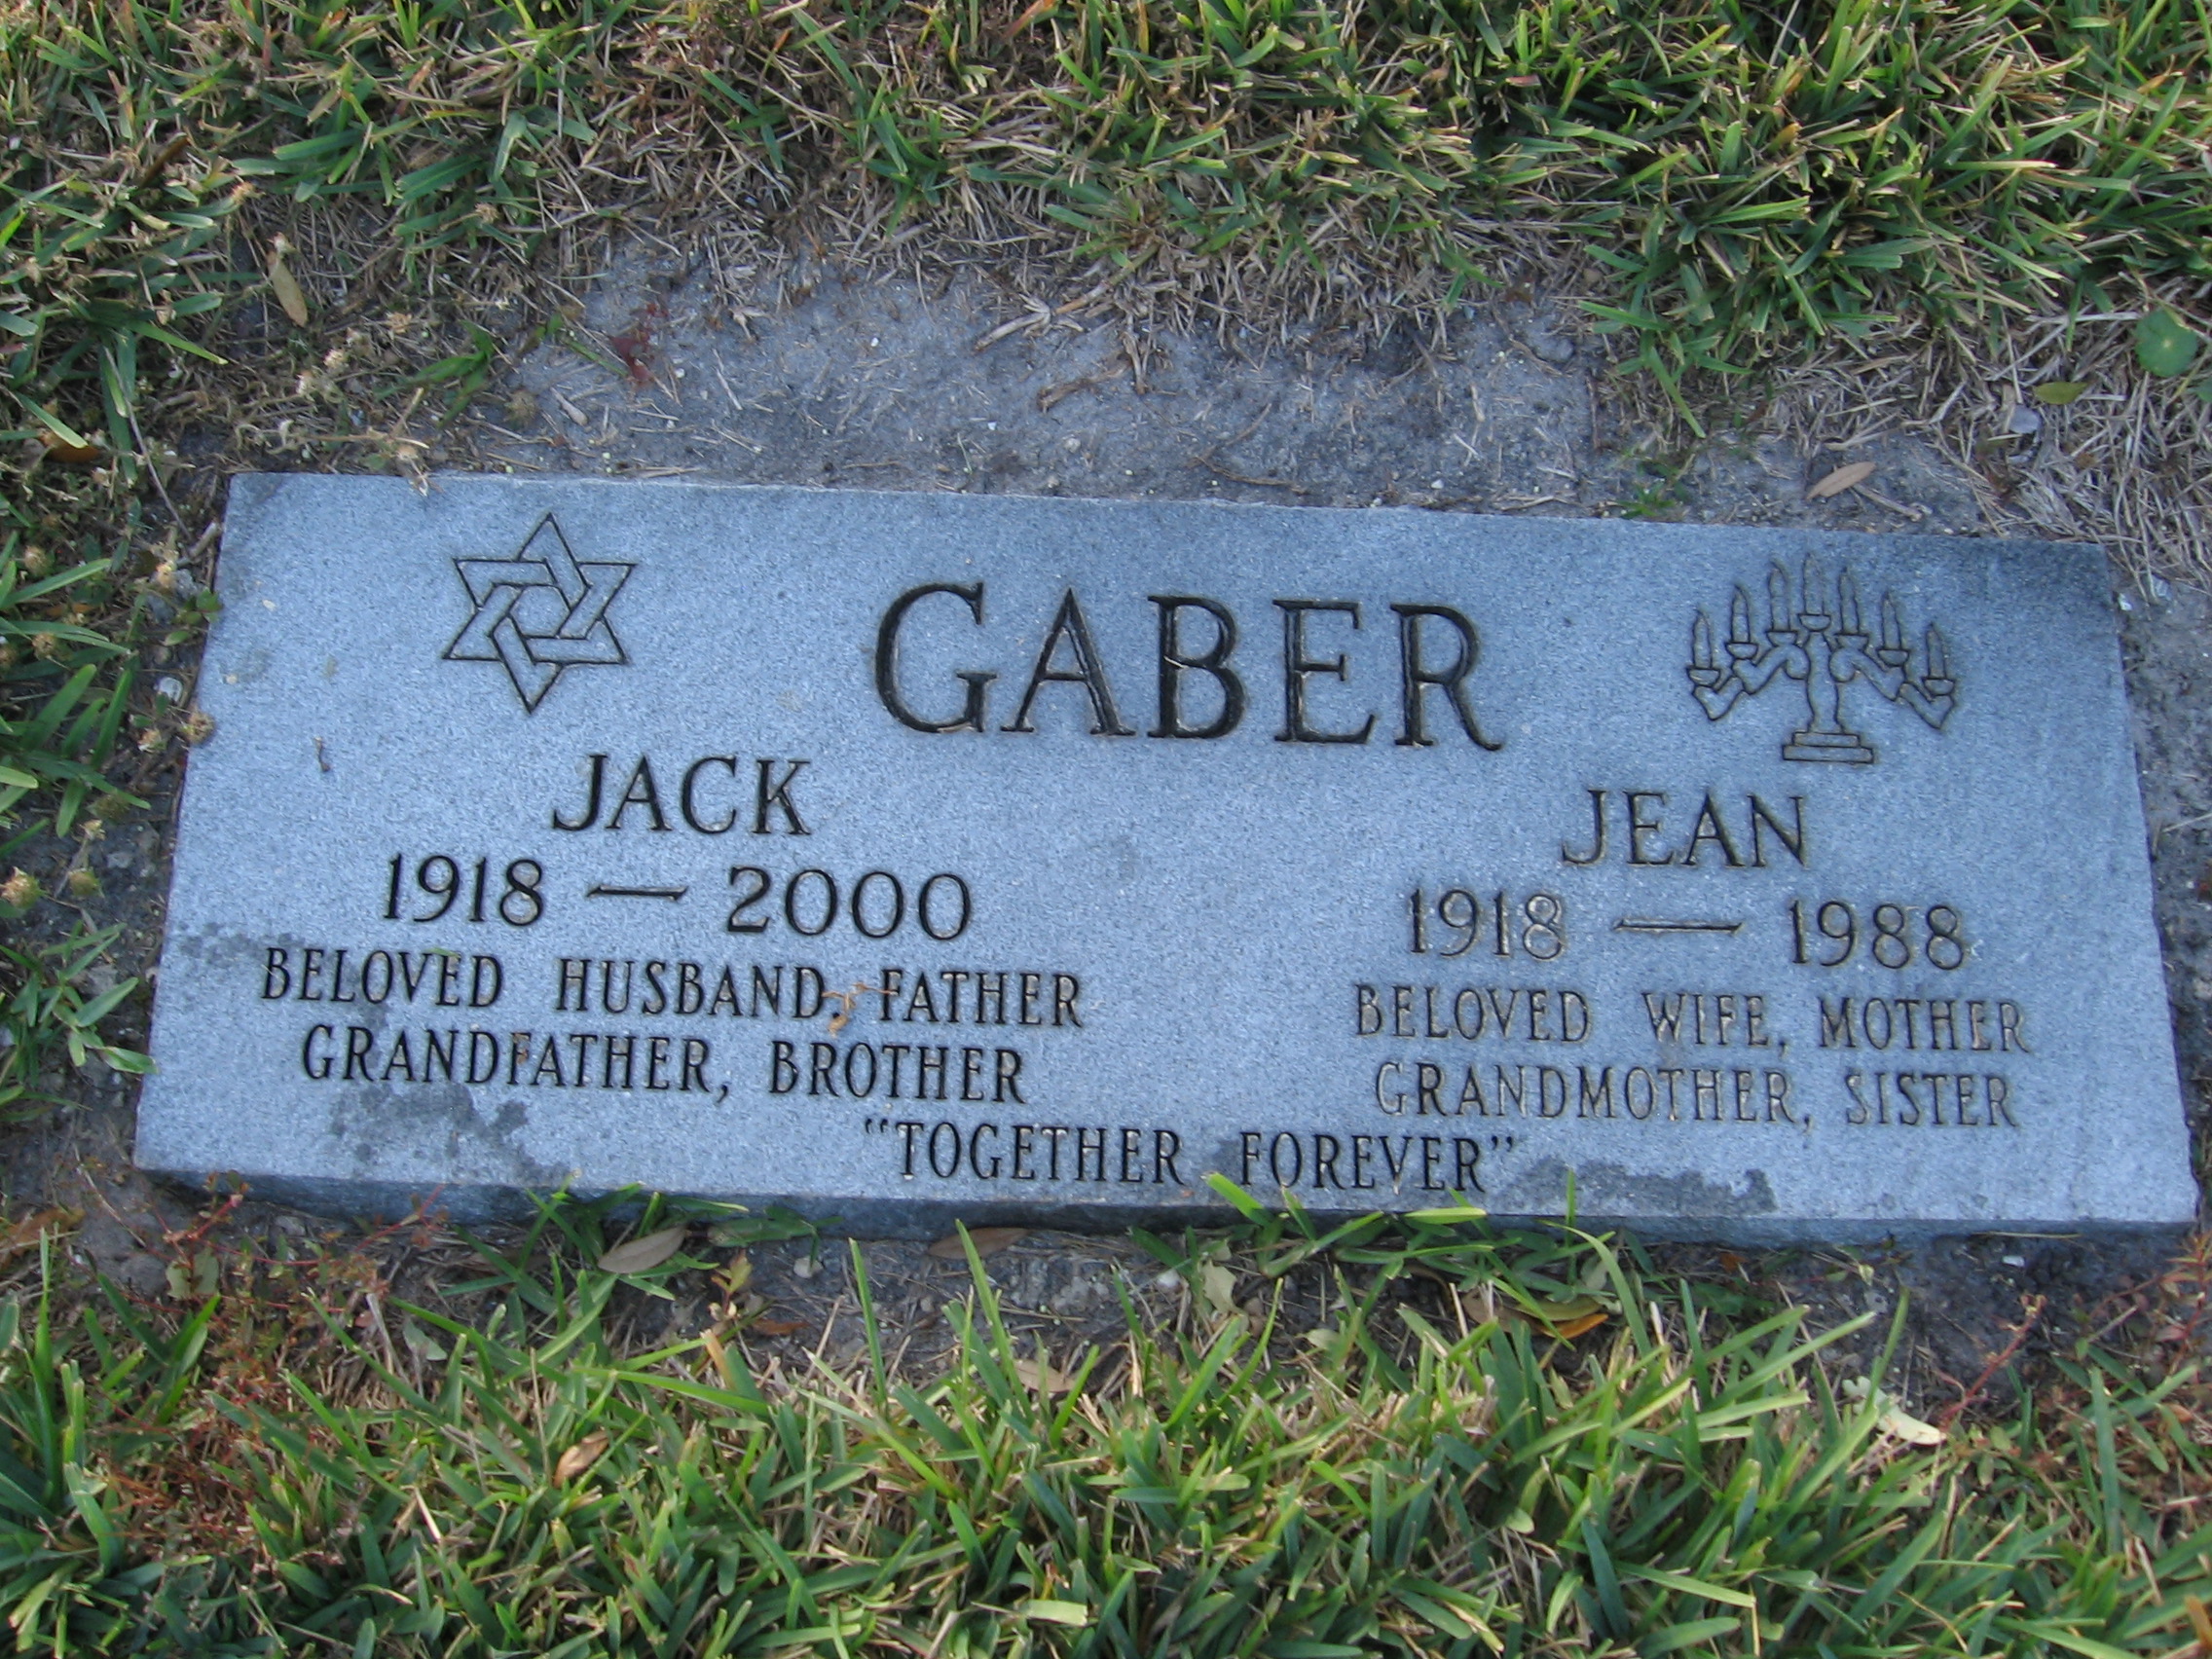 Jack Gaber